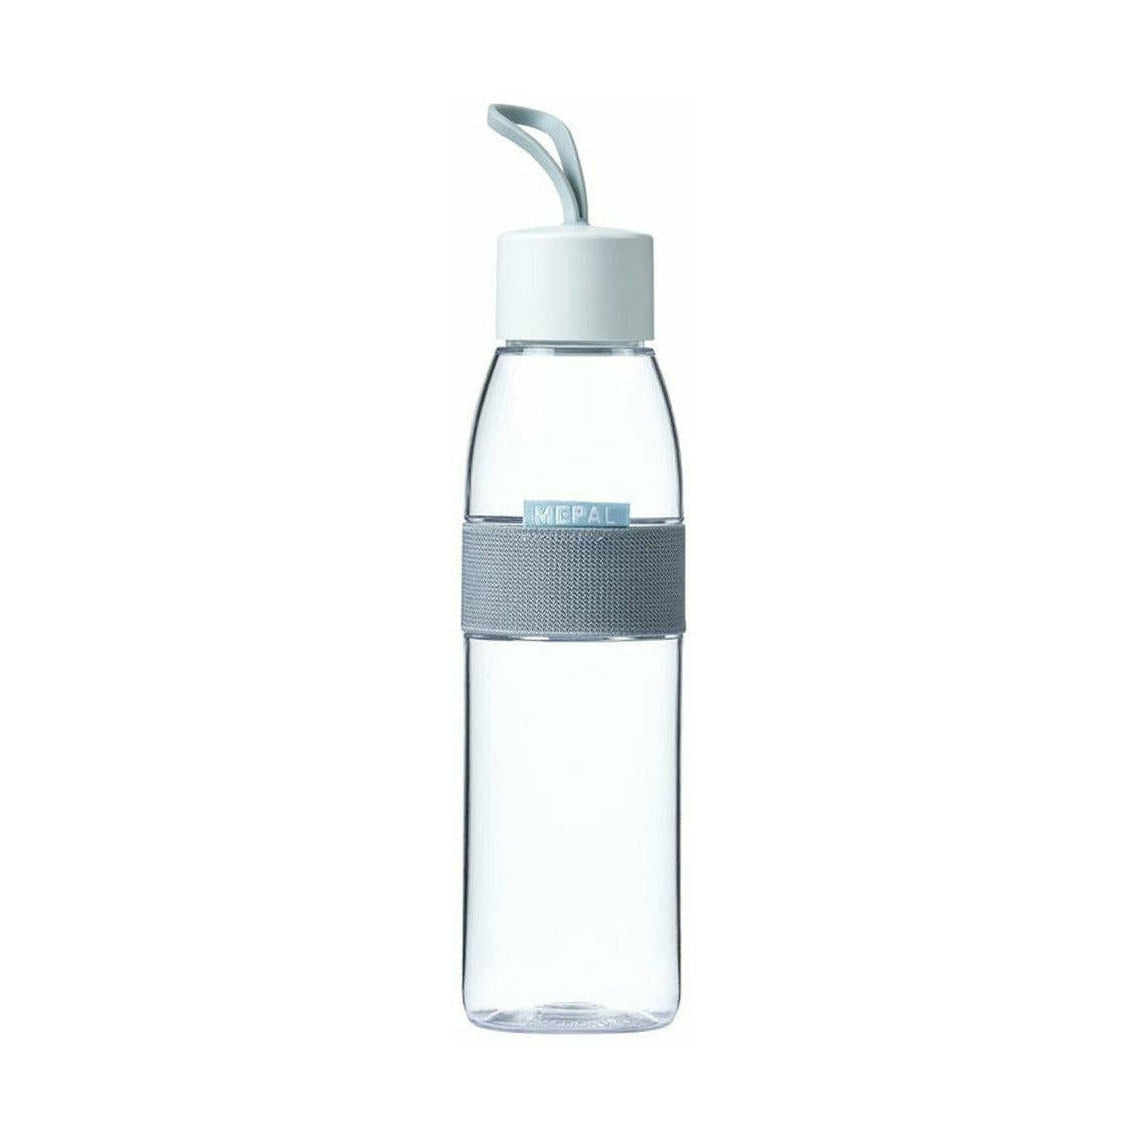 Mepal Water Flasche Ellipse 0,5 l, transparent / weiß